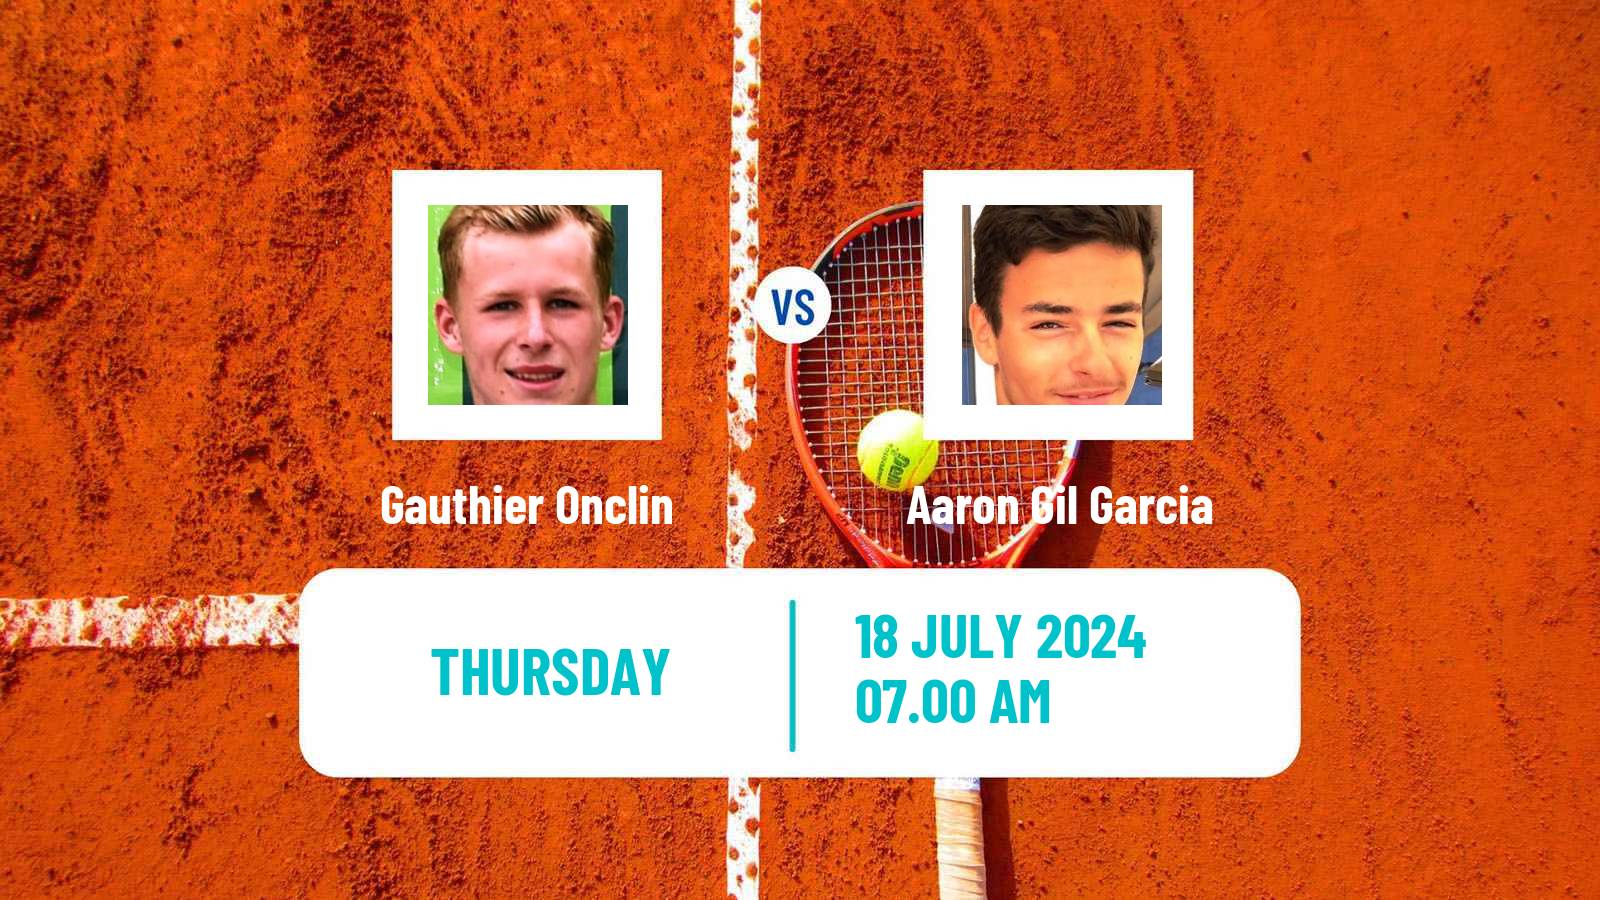 Tennis ITF M25 Esch Alzette 2 Men Gauthier Onclin - Aaron Gil Garcia